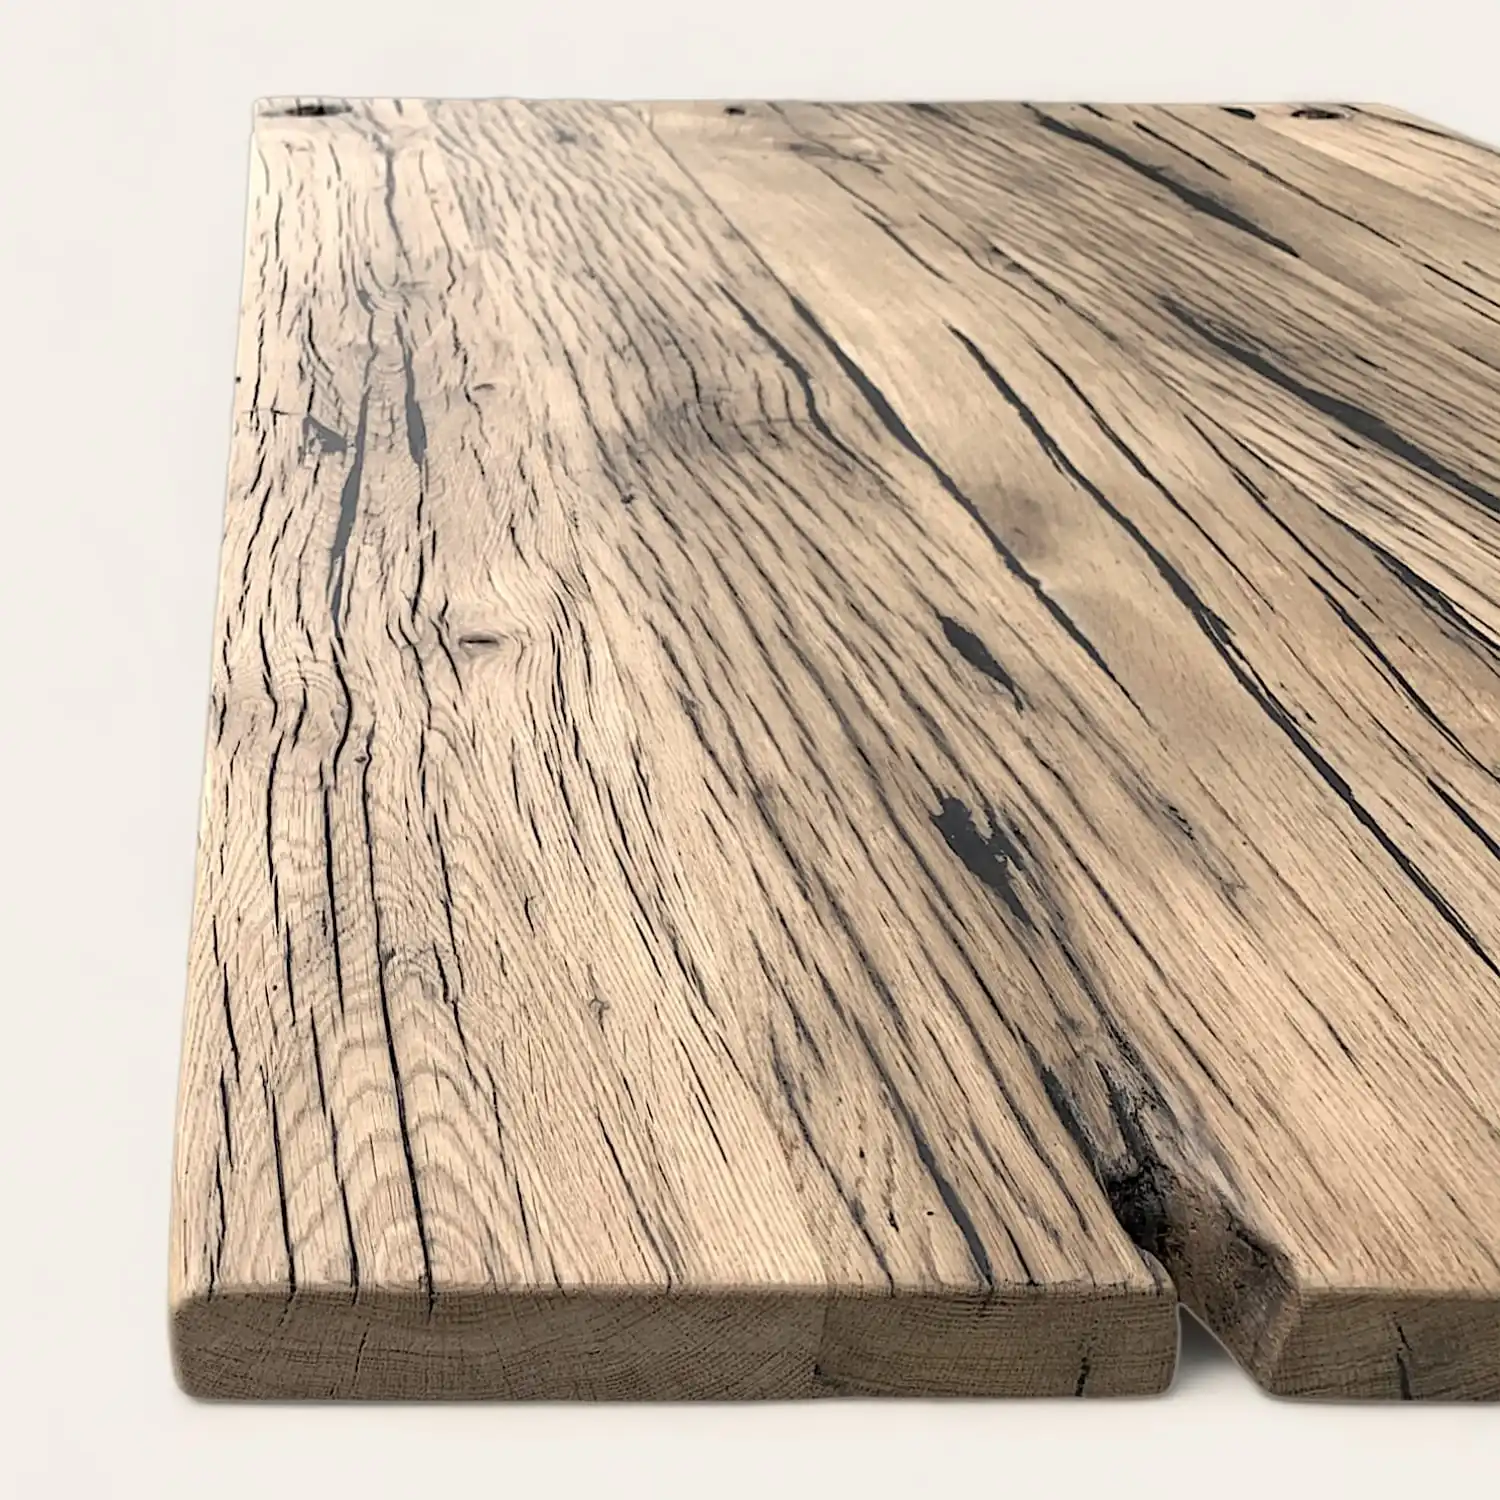  Une table en bois sur une surface blanche. 